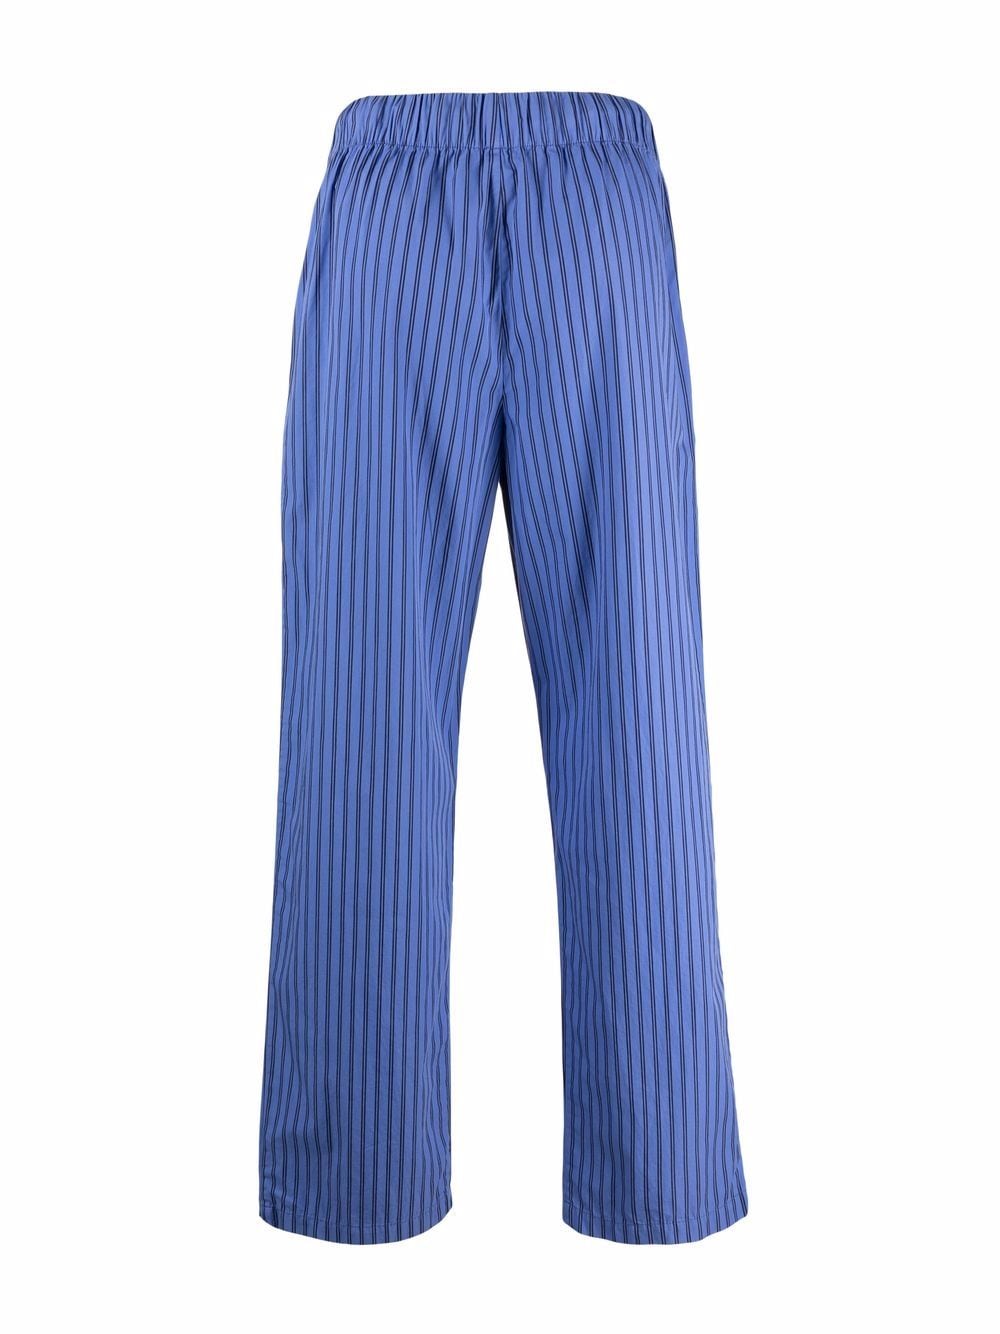 фото Tekla пижамные брюки verneuil в полоску